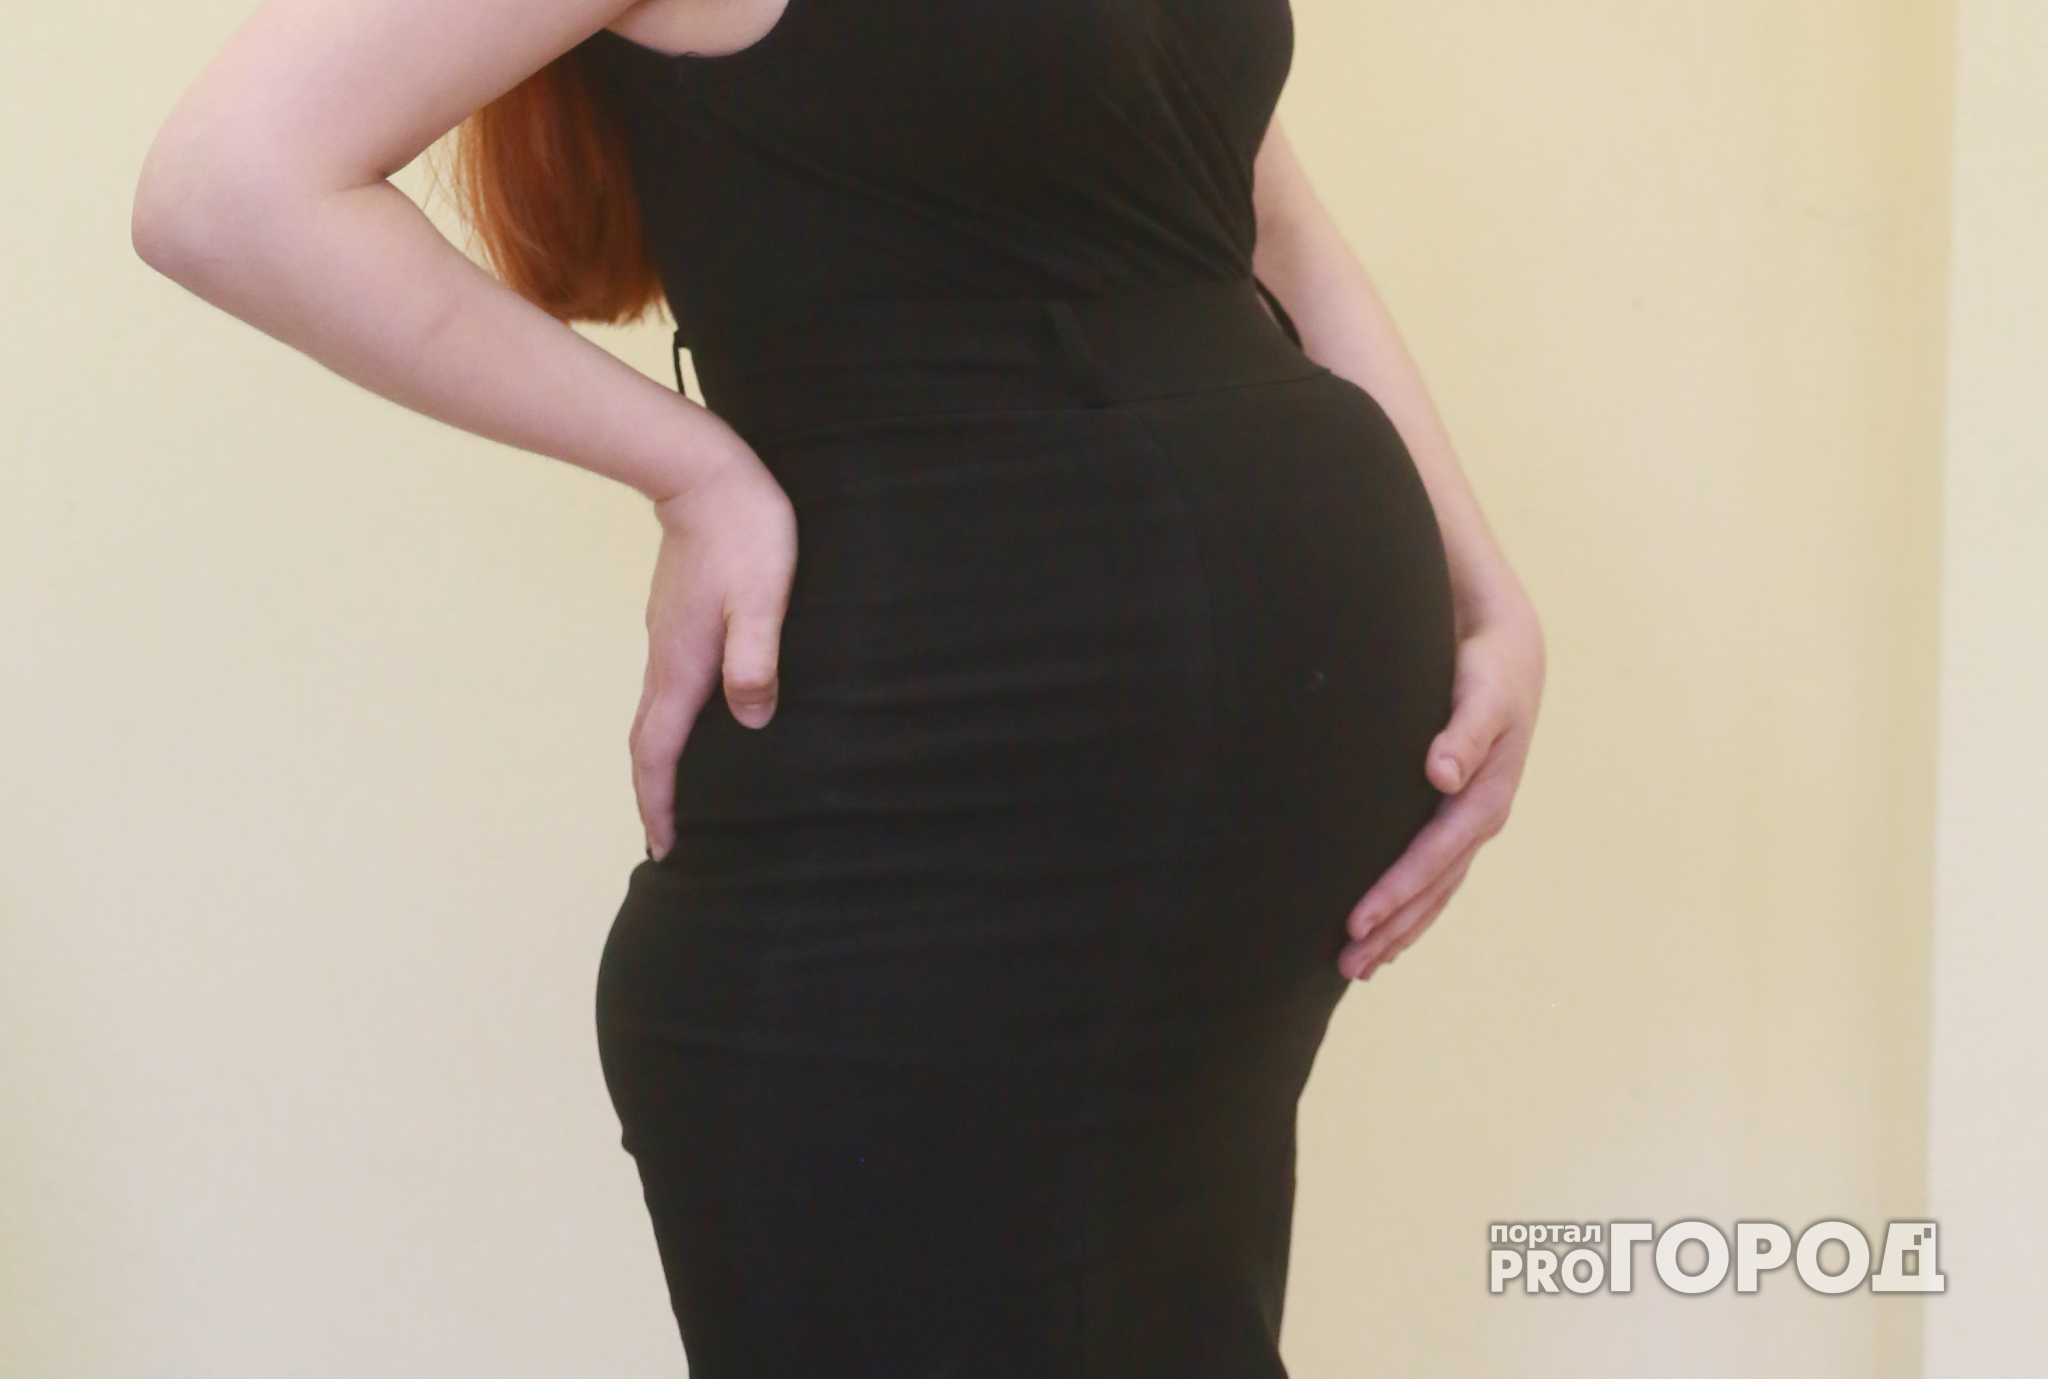 В Вурнарском районе две недели издевались над беременной женщиной